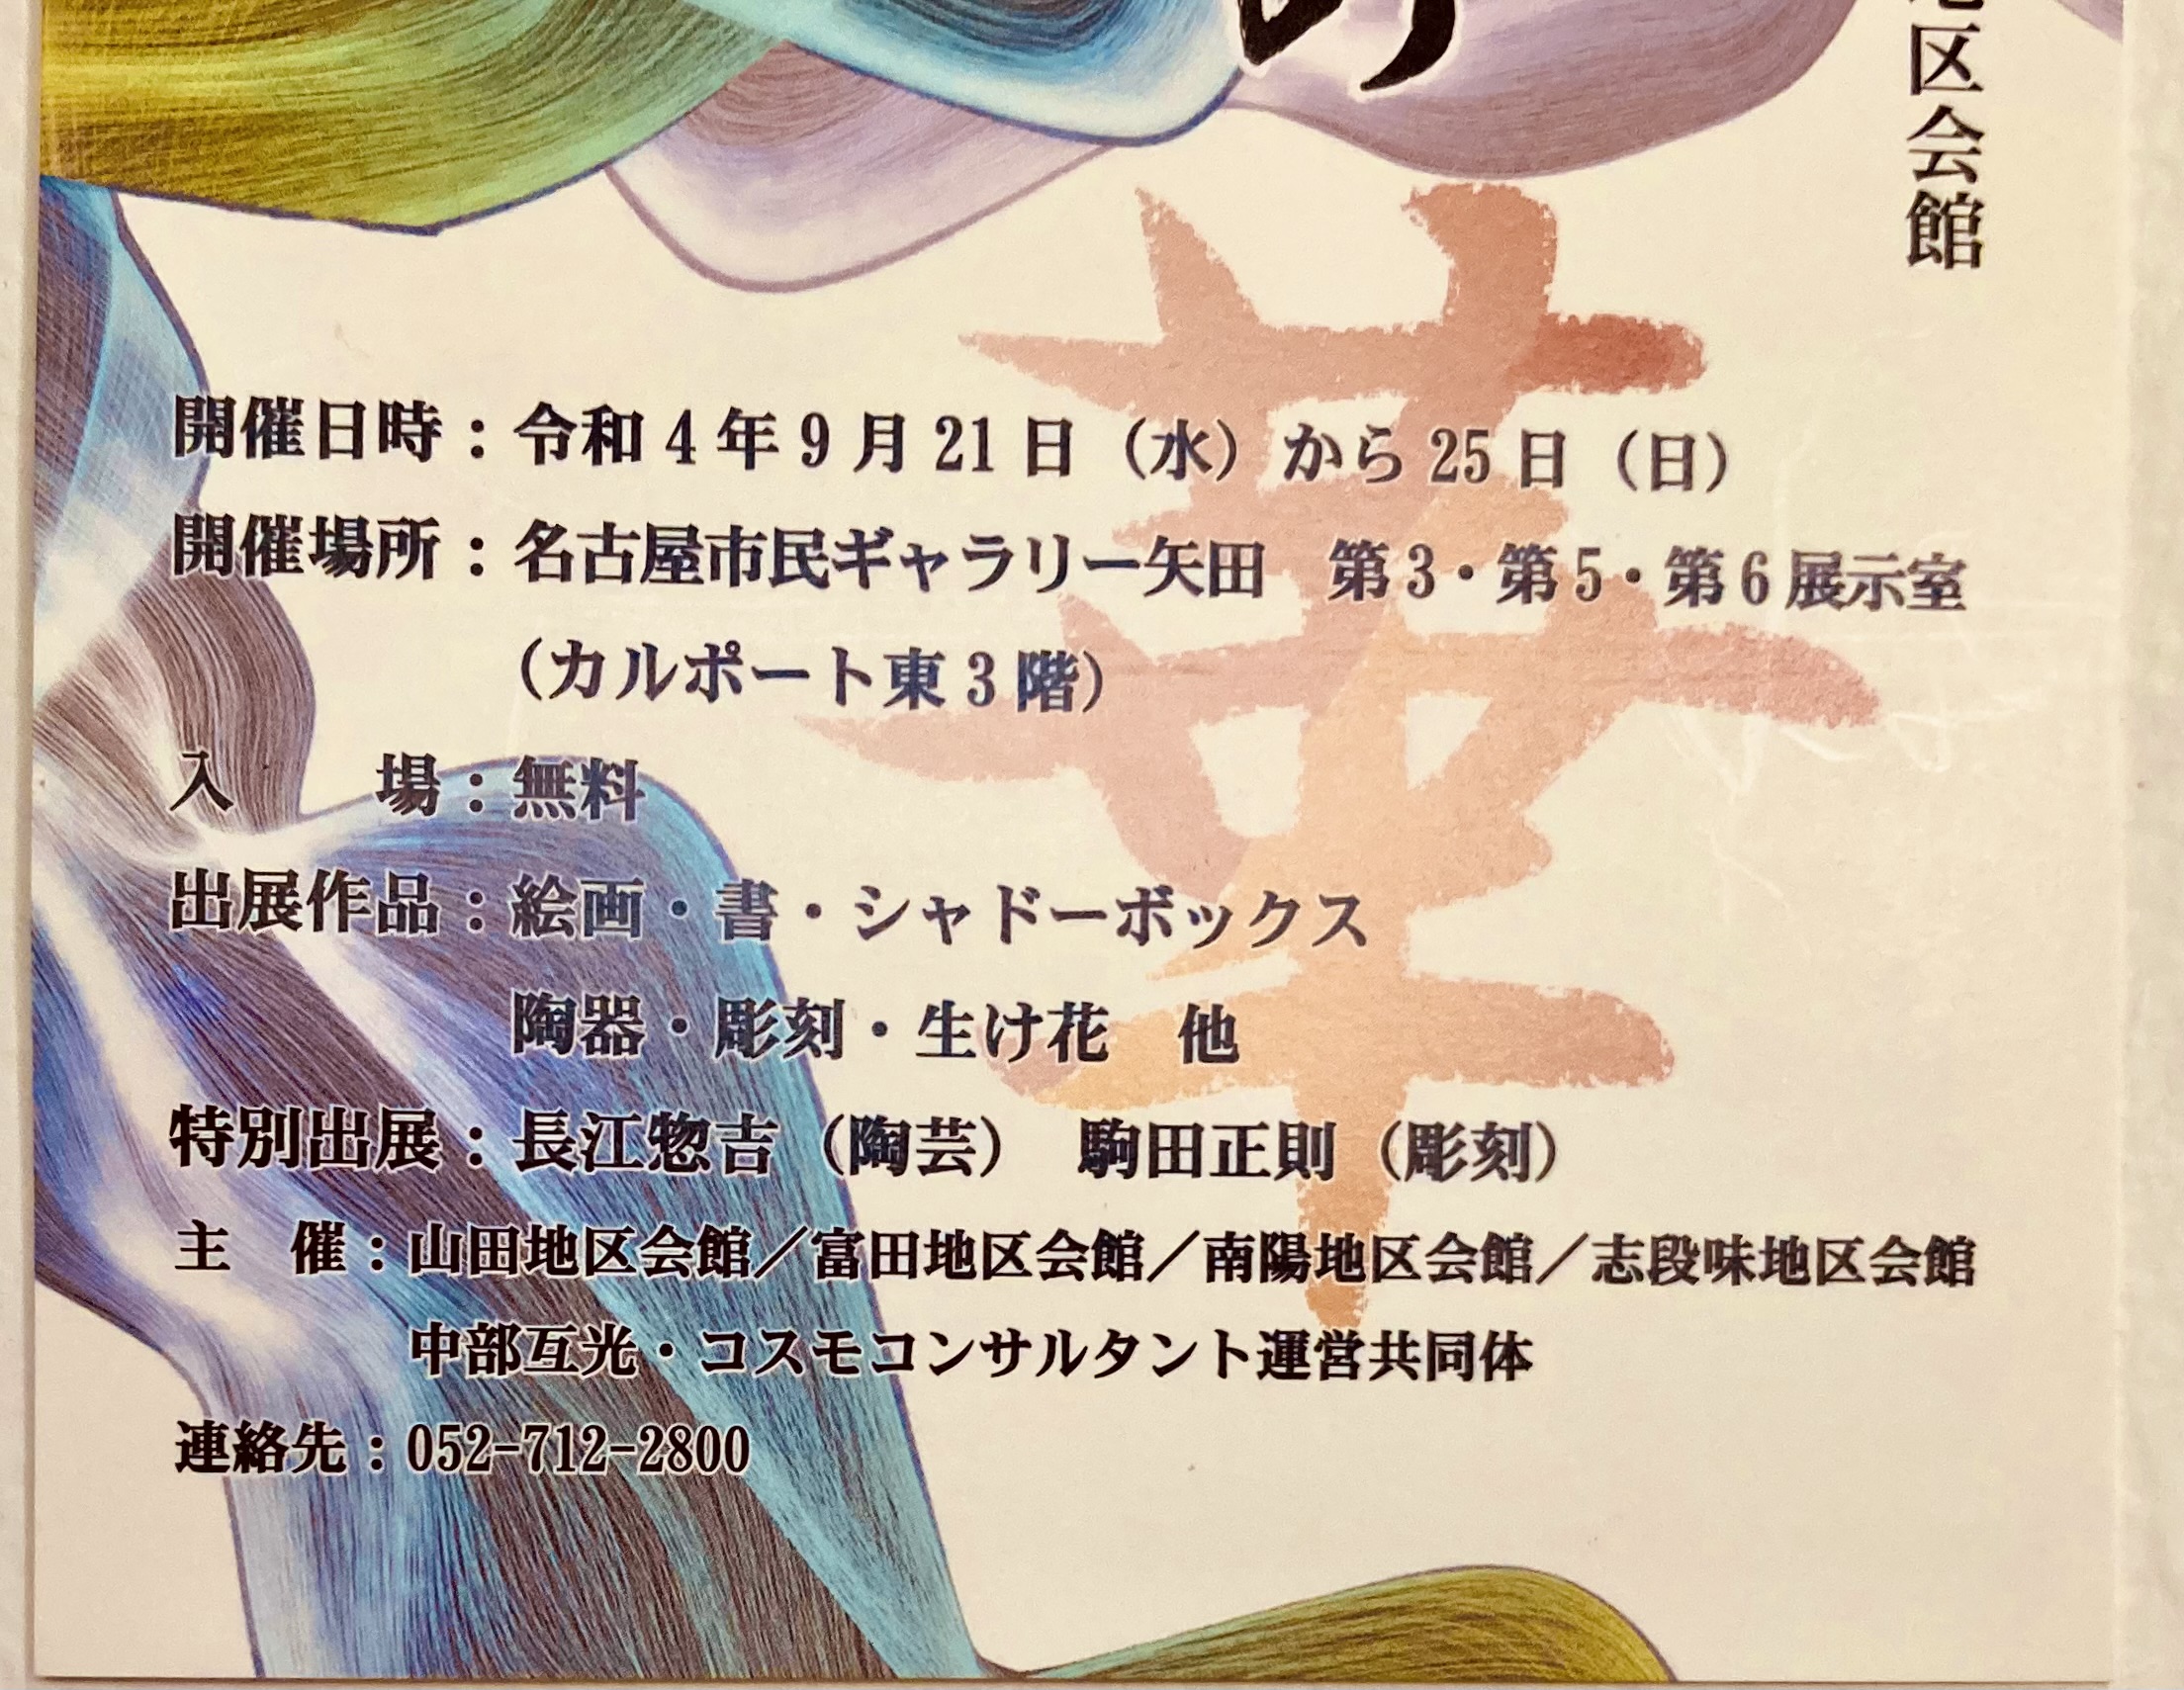 「繚乱の華」展に出品！”Ryoran no Hana” Group Exhibition ！9/21-9/25